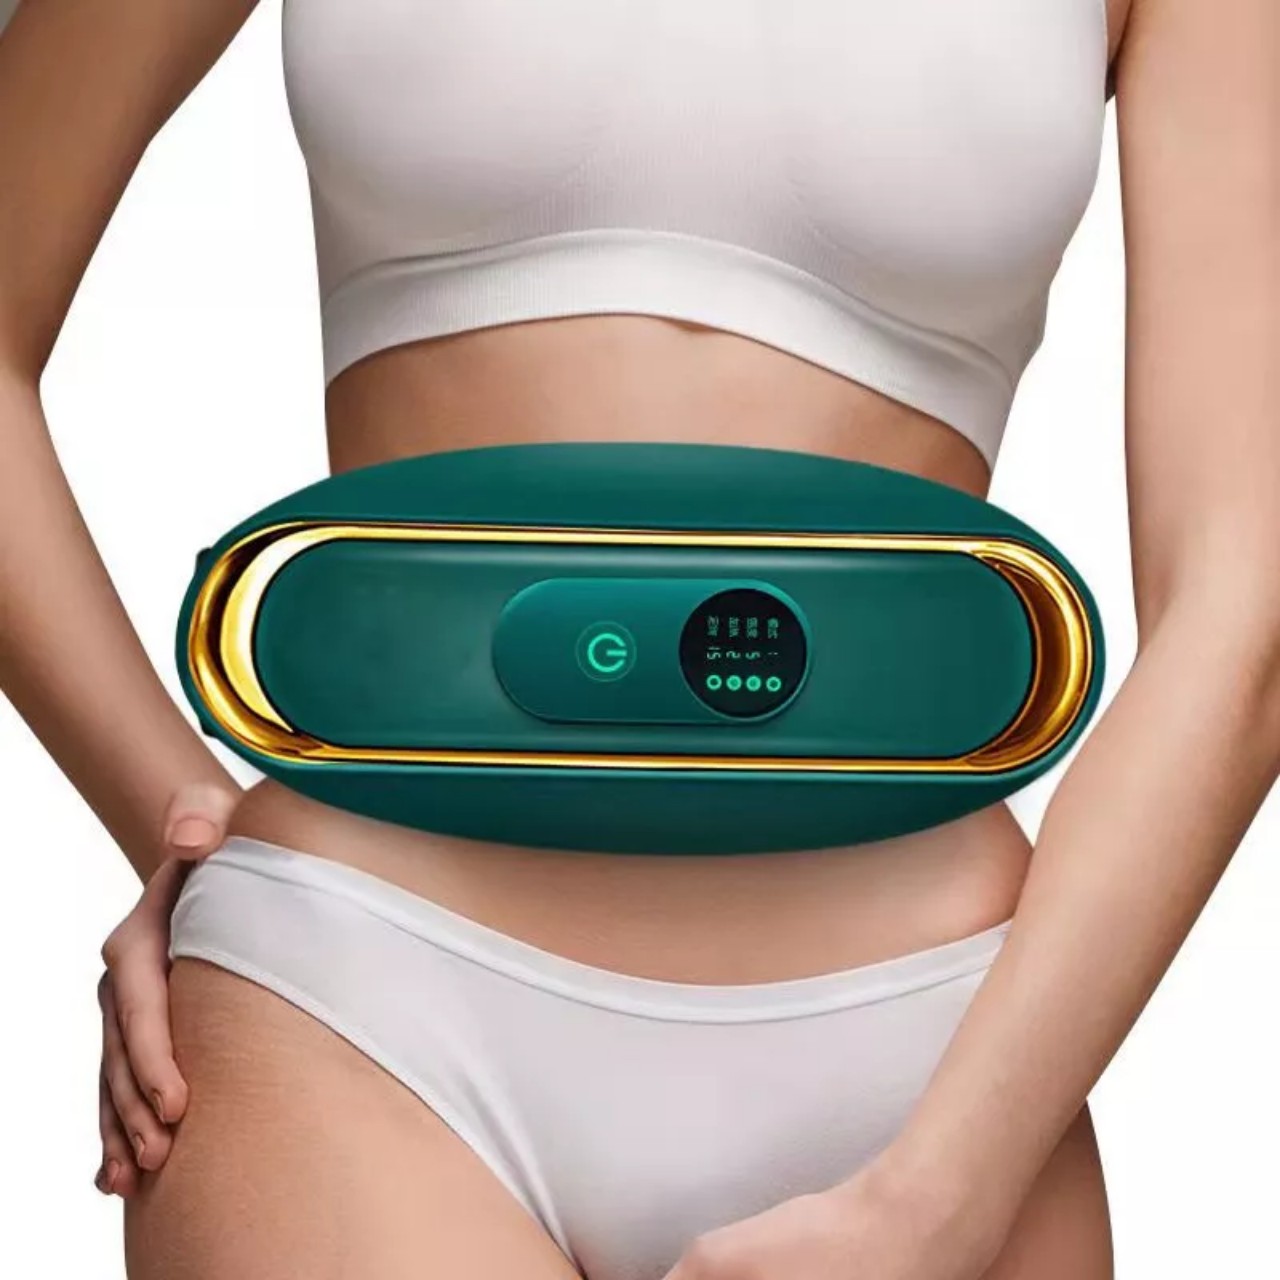 Đai rung massage bụng MX8, Máy massage rung nóng giảm kg mỡ bụng toàn thân hàng cao câp